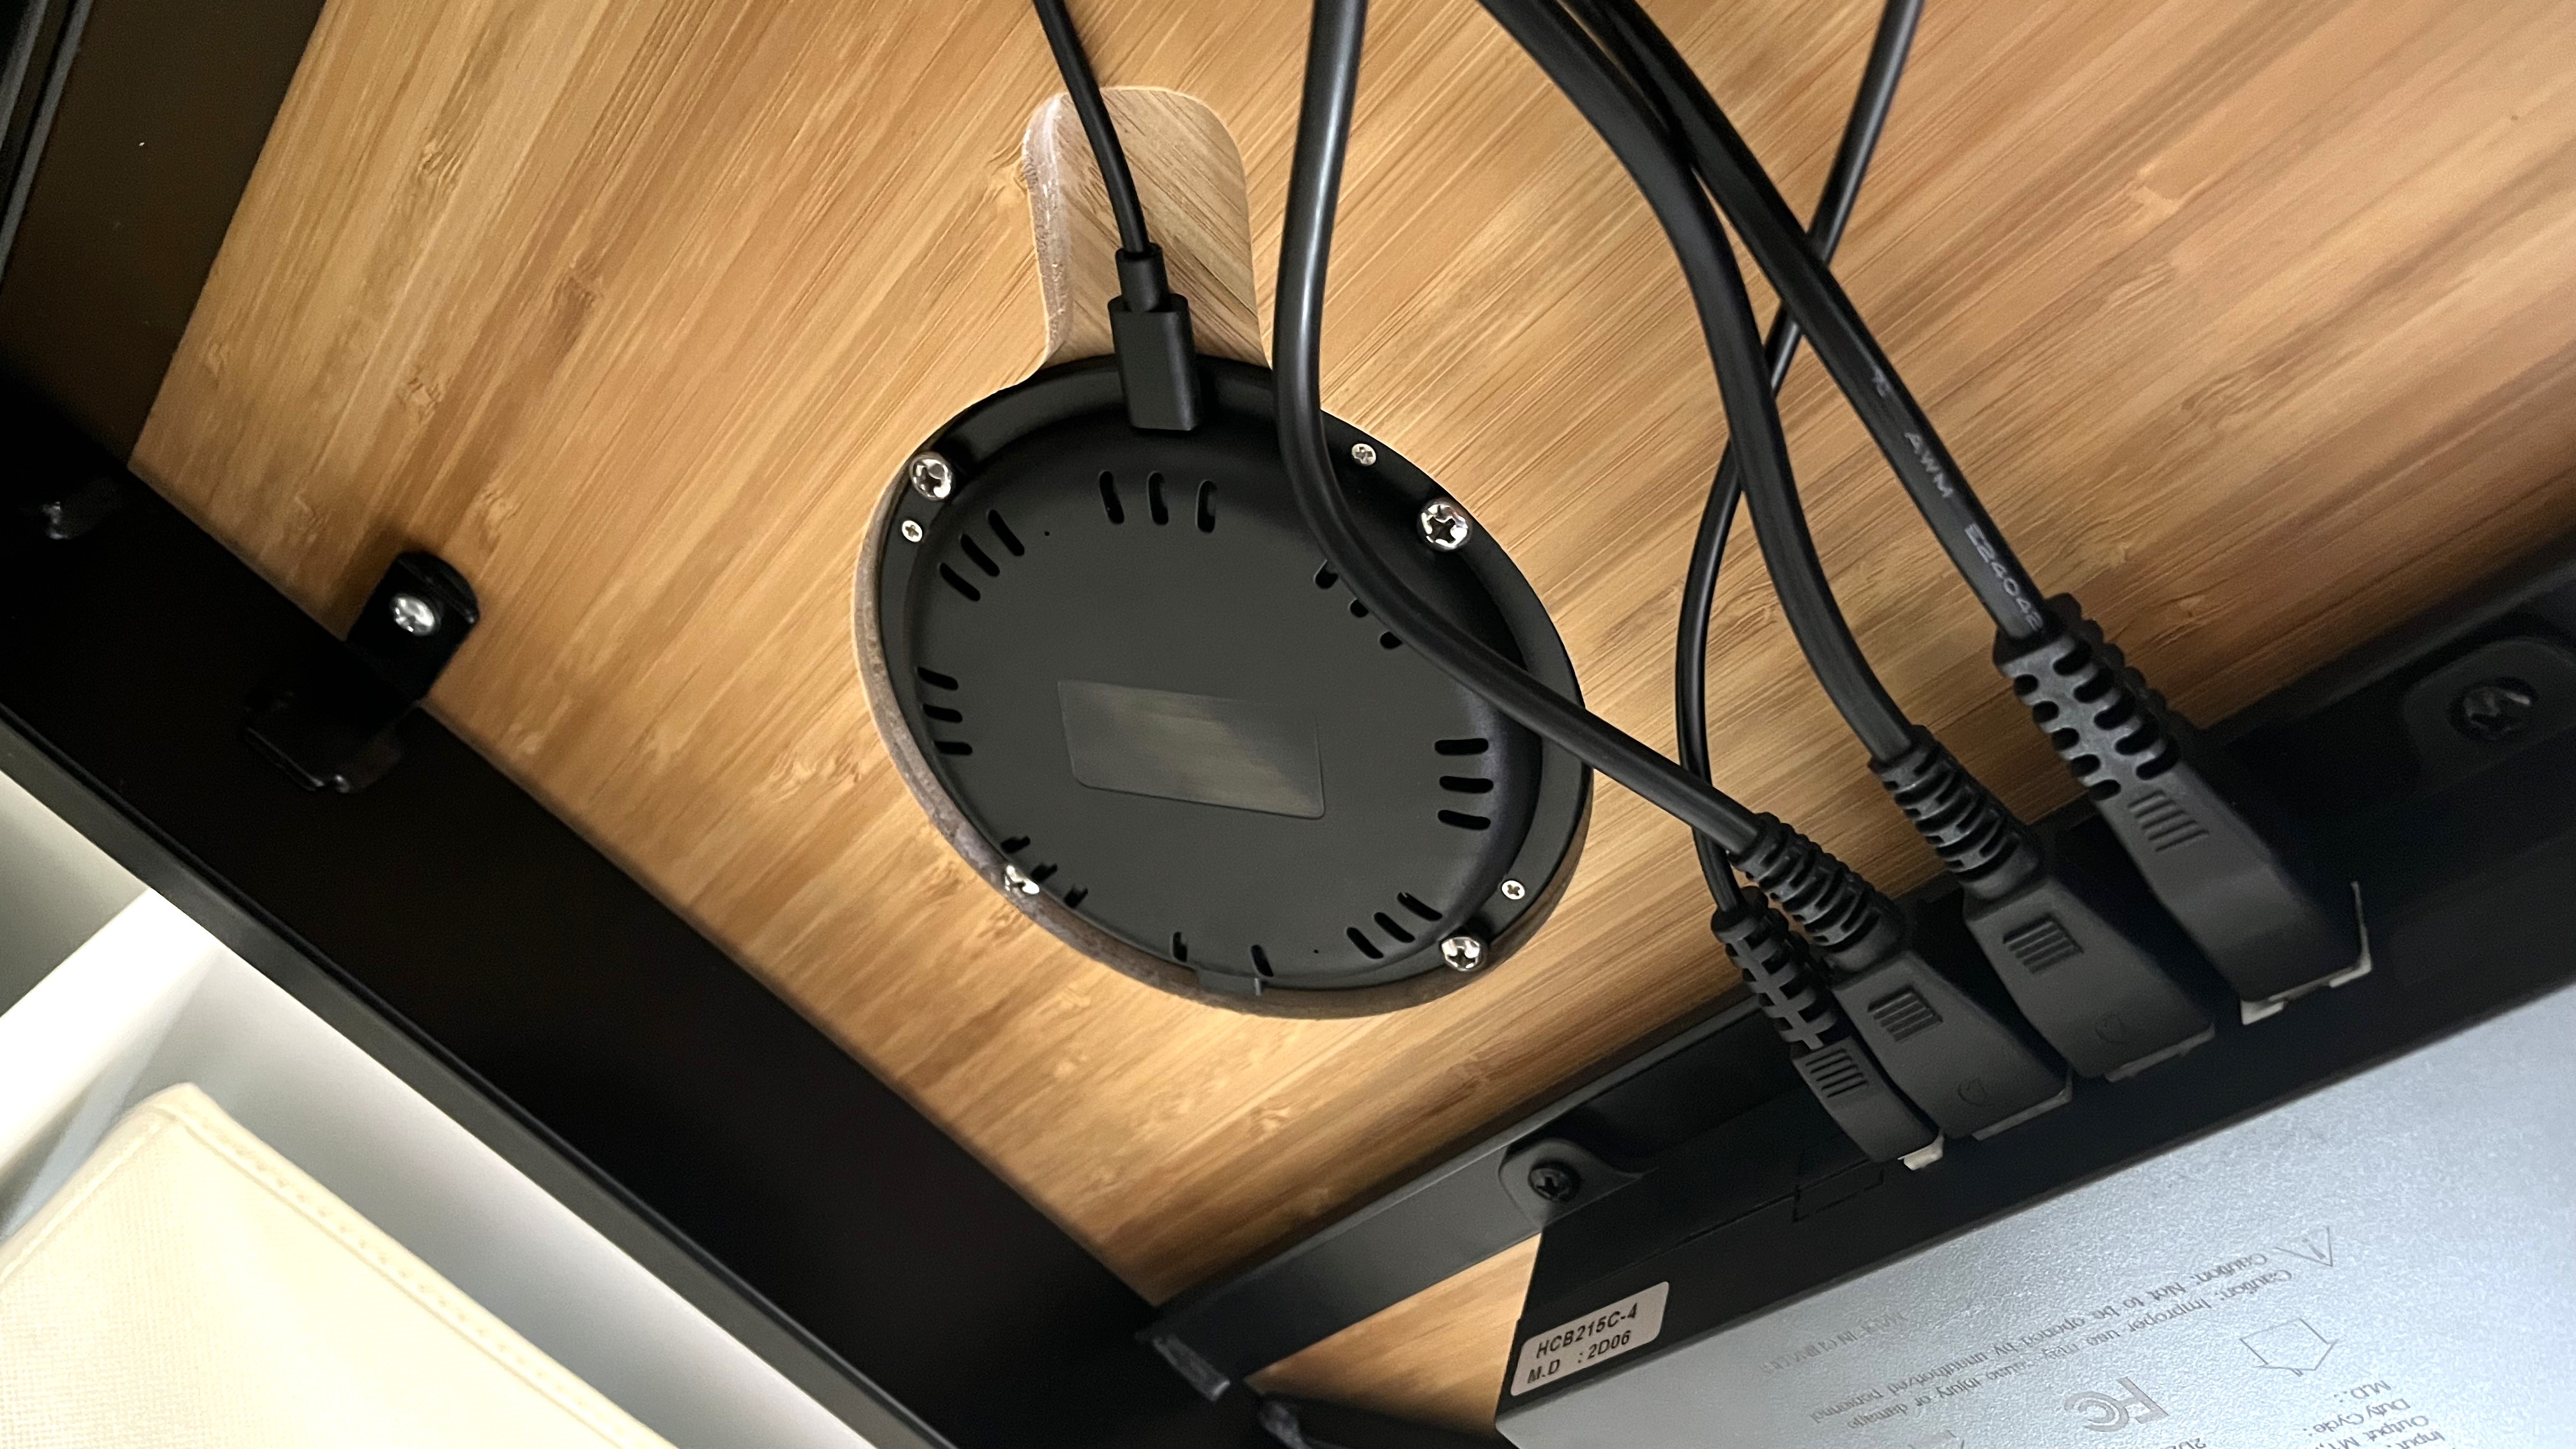 Kabelloses Ladegerät FlexiSpot Q8 unter dem Schreibtisch integriert